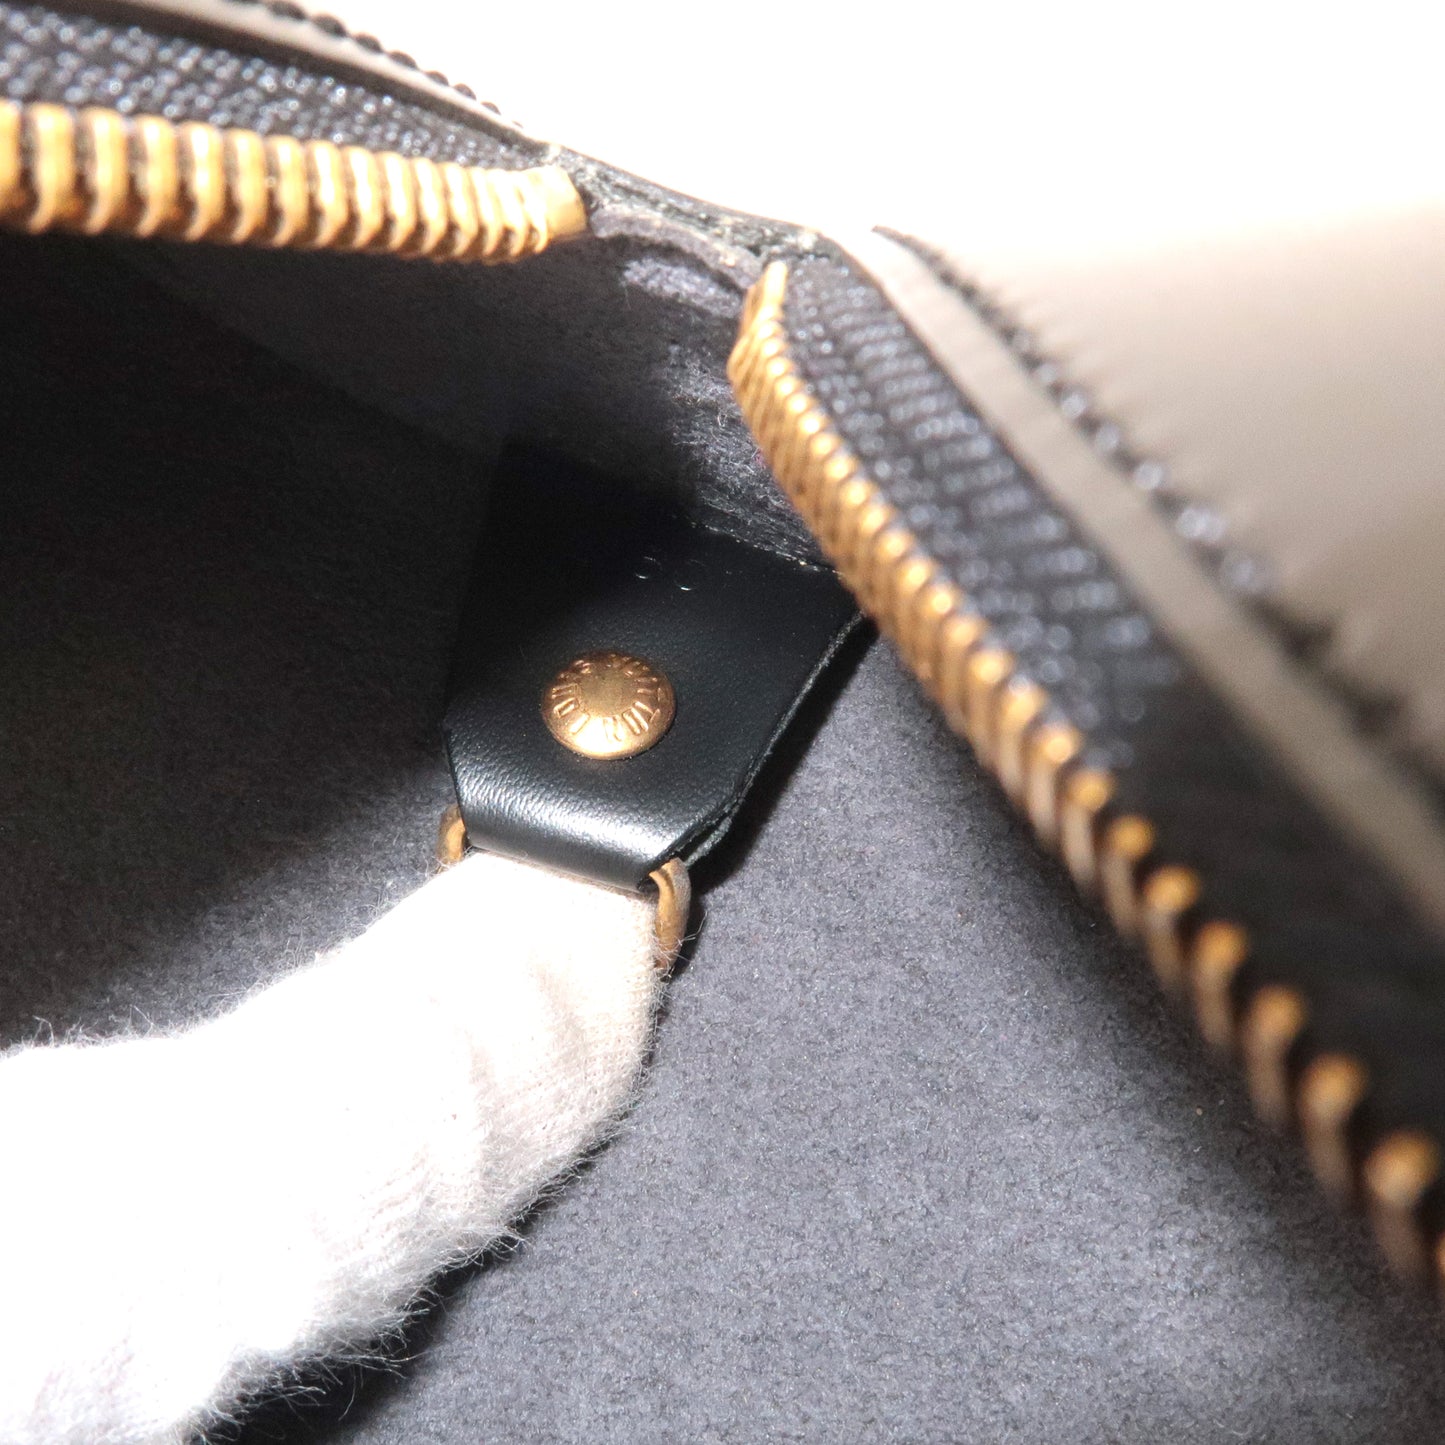 Louis Vuitton Epi Soufflot Hand Bag Noir Black M52862